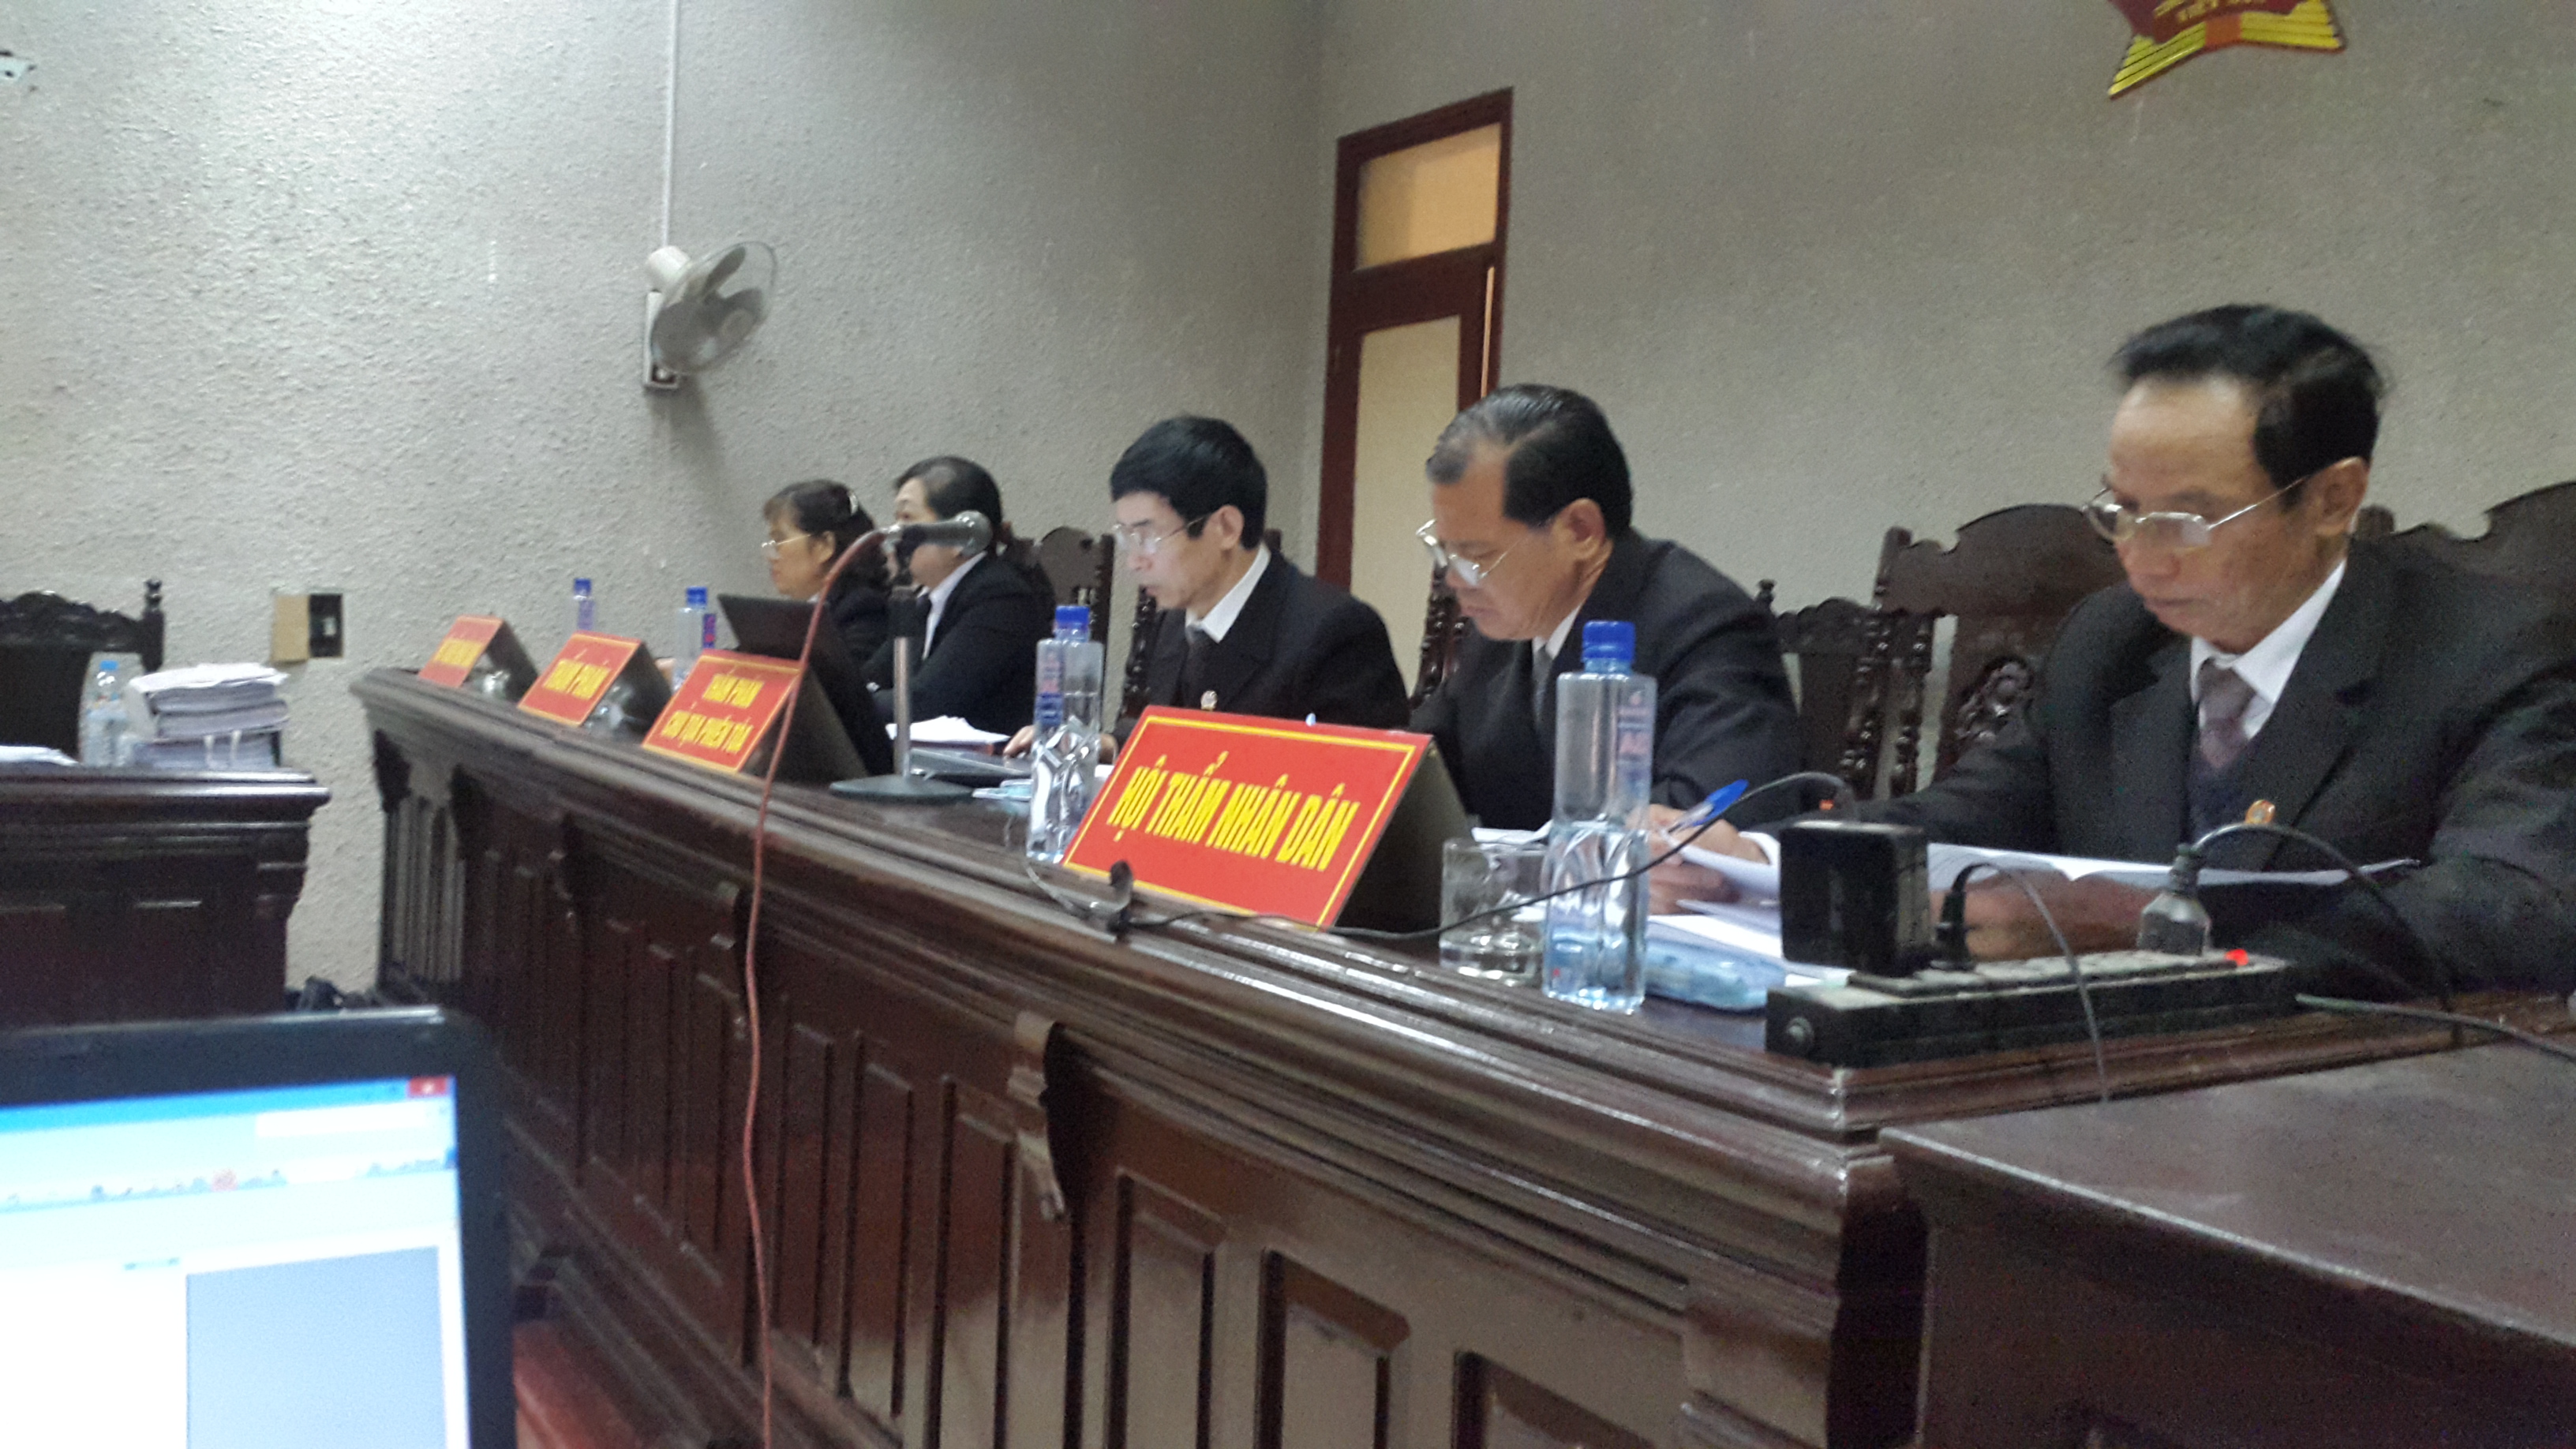 Hội đồng xét xử vụ án hình sự tham ô tài sản tại tỉnh Điện Biên